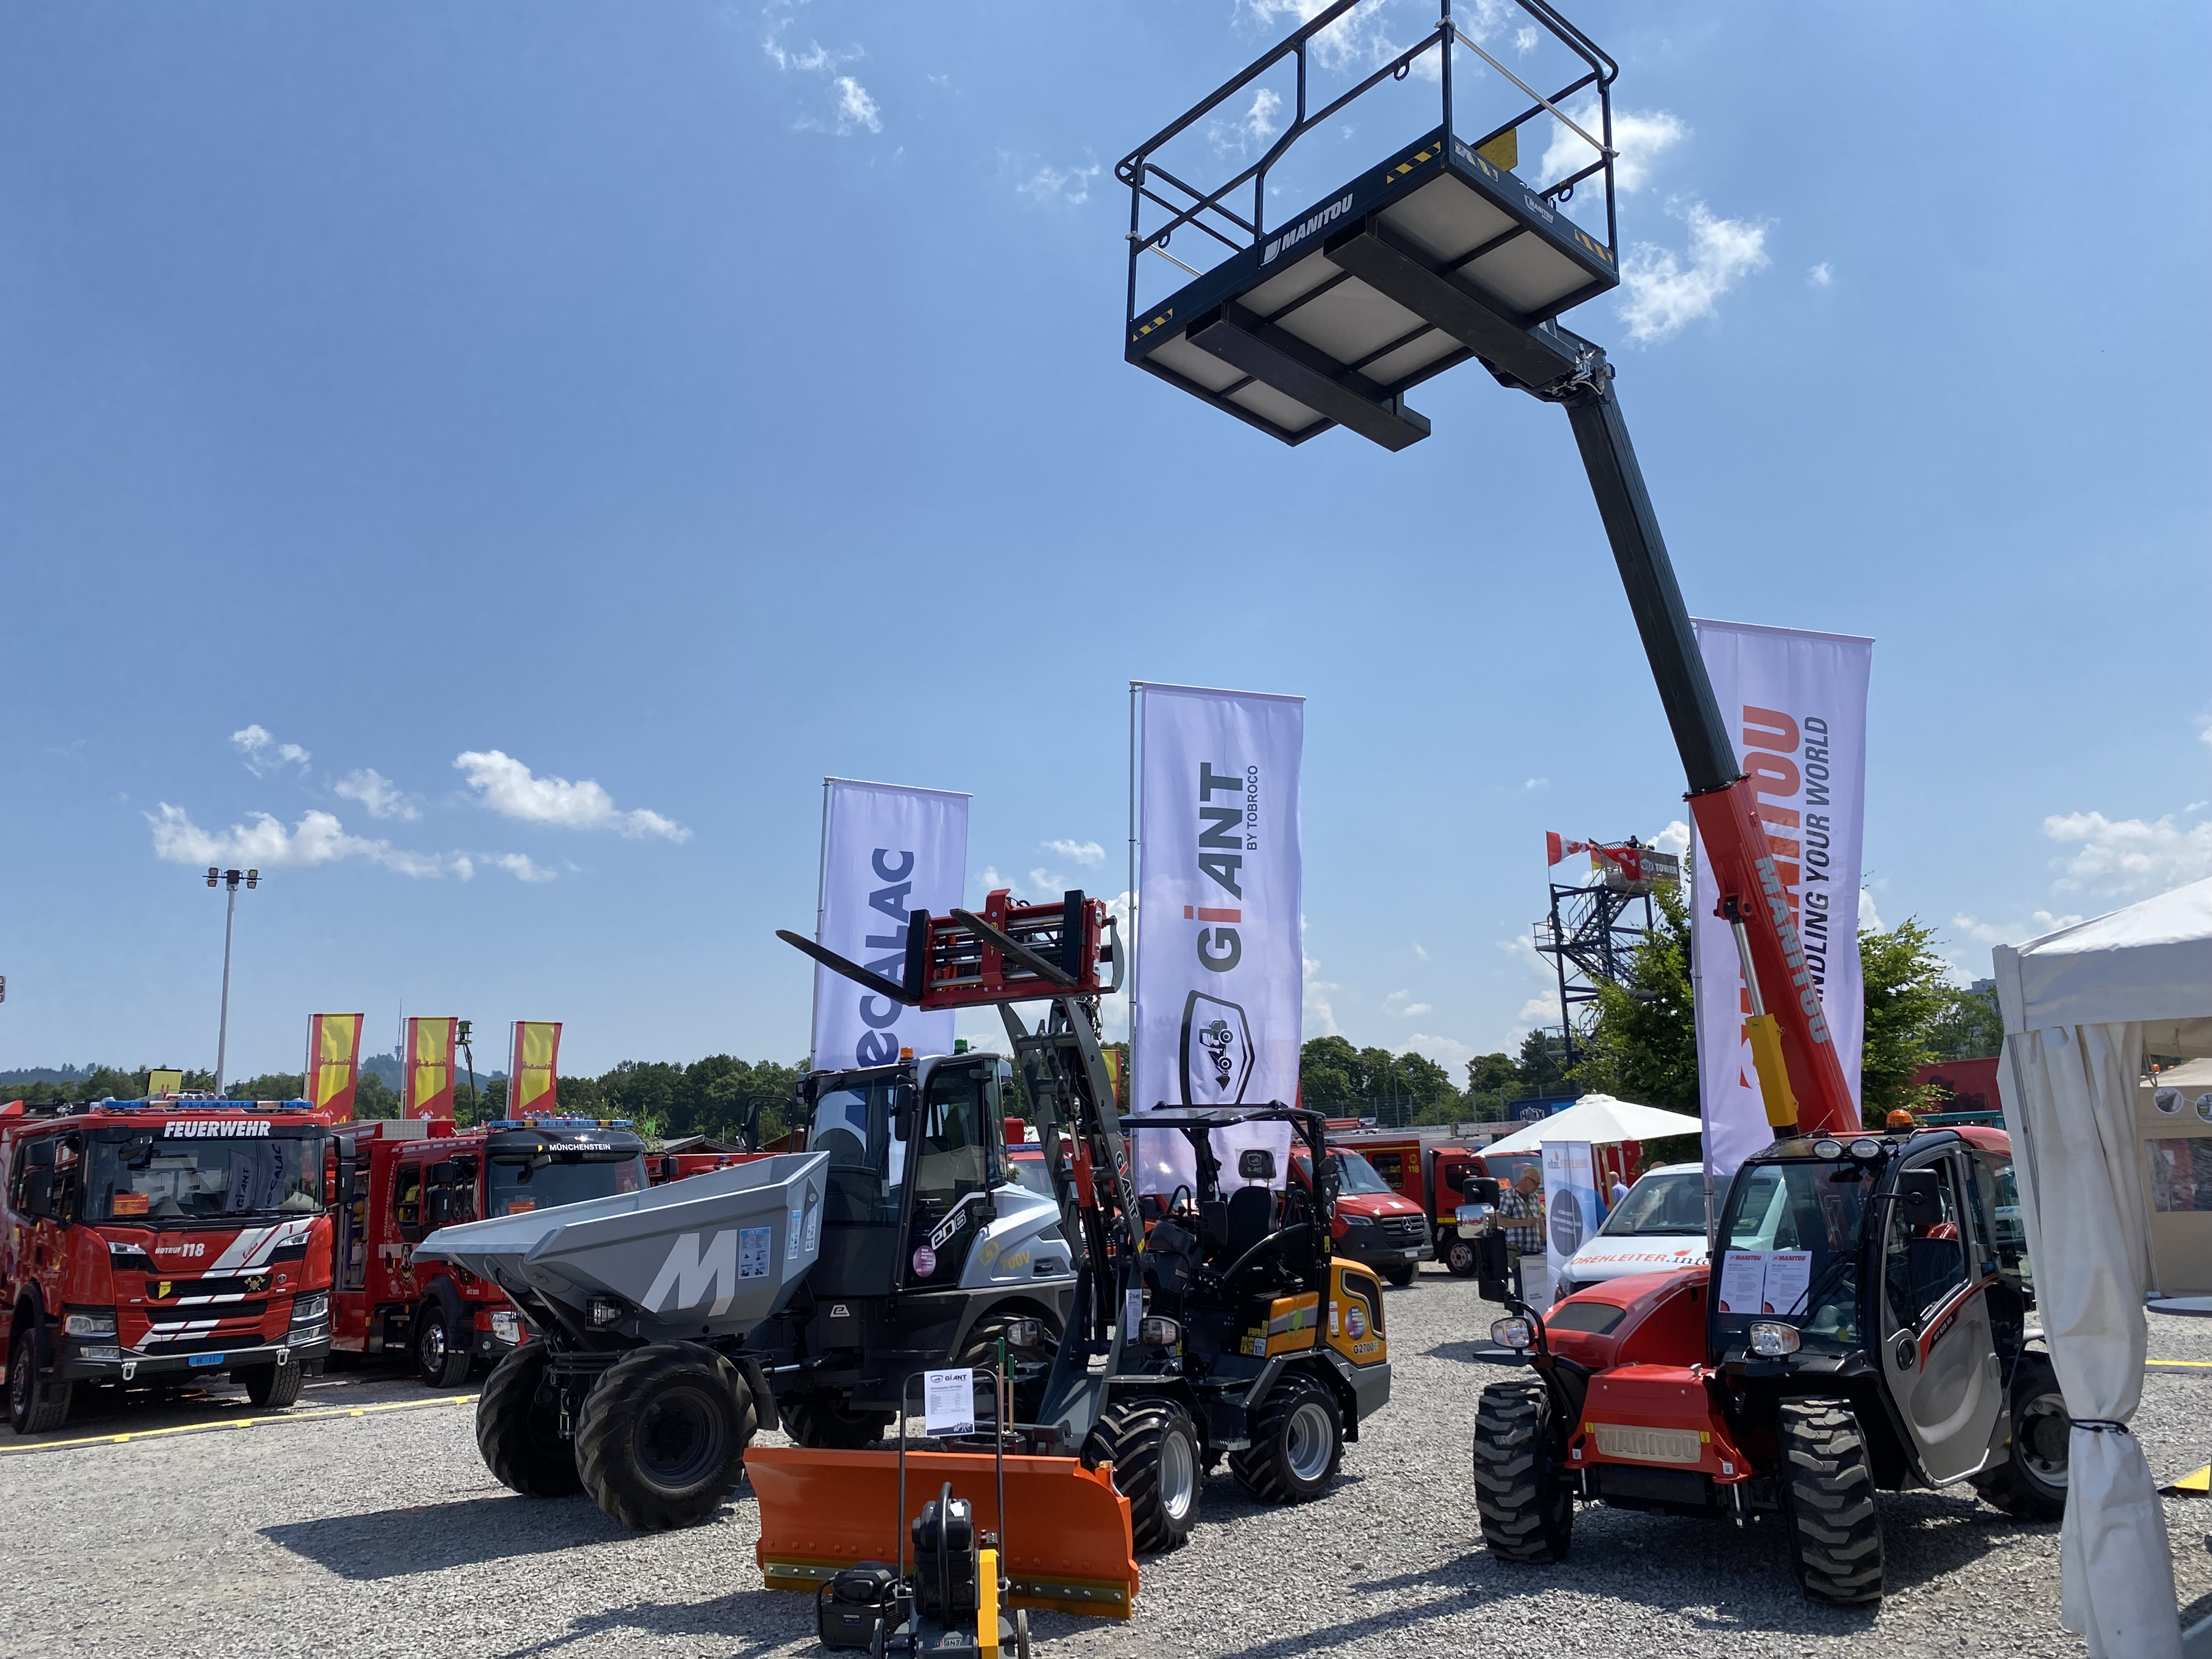 Bei bestem Wetter werden die verschiedensten Maschinen auf dem Berner Expo-Gelände ausgestellt. (Bild: Livio Janett)